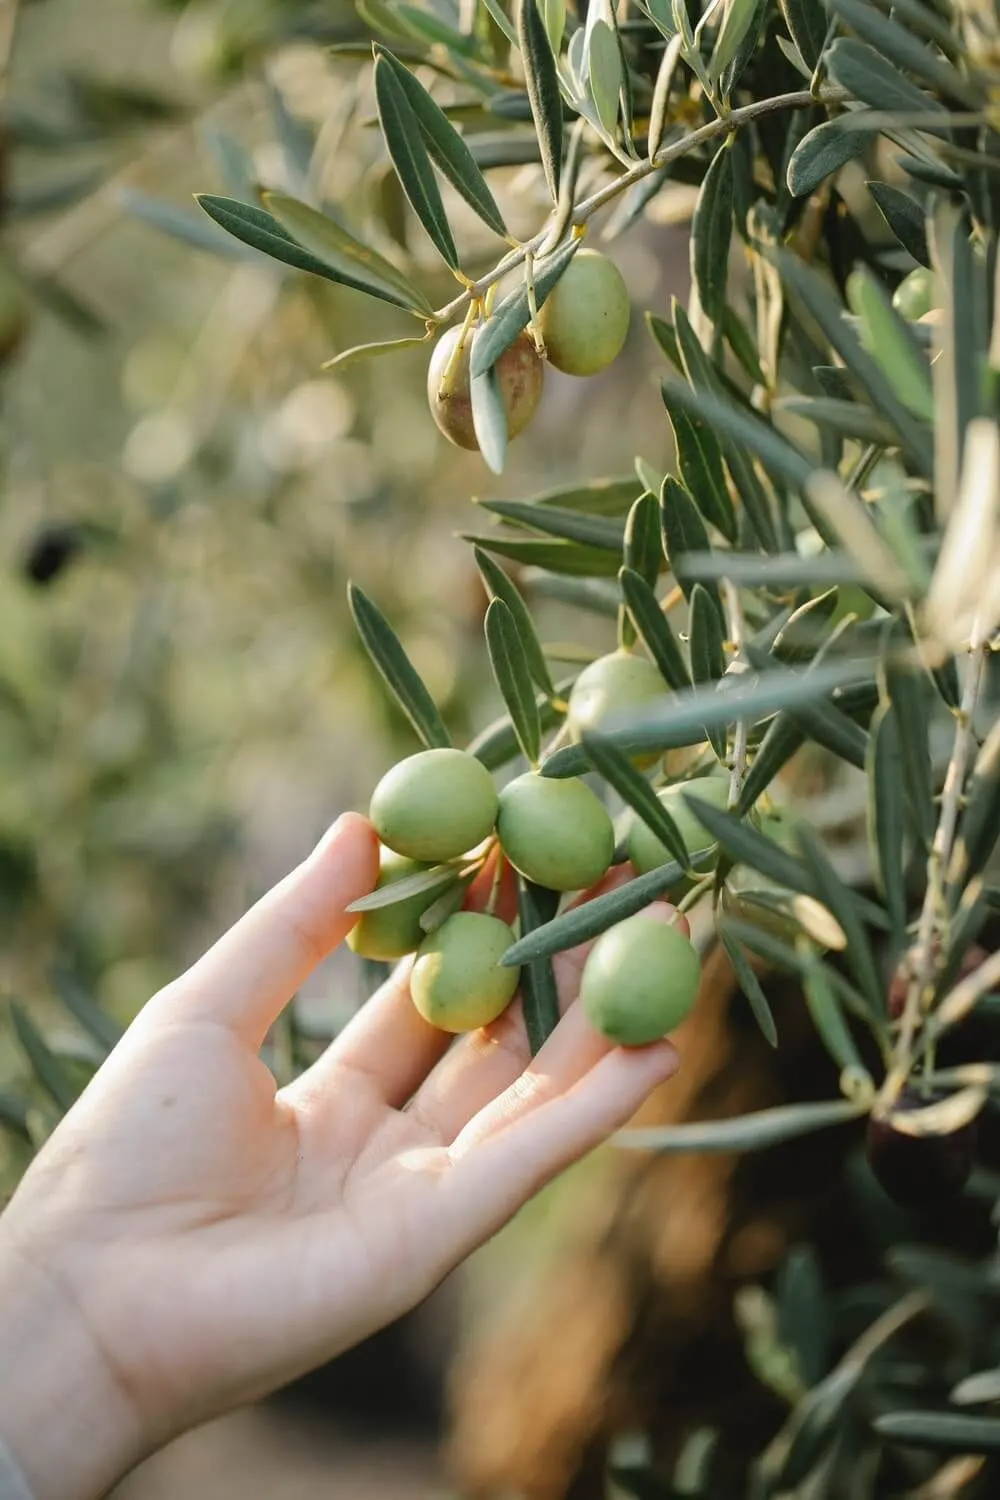 Top 4 des bienfaits de l'huile d'olive sur la peau : Femme Actuelle Le MAG